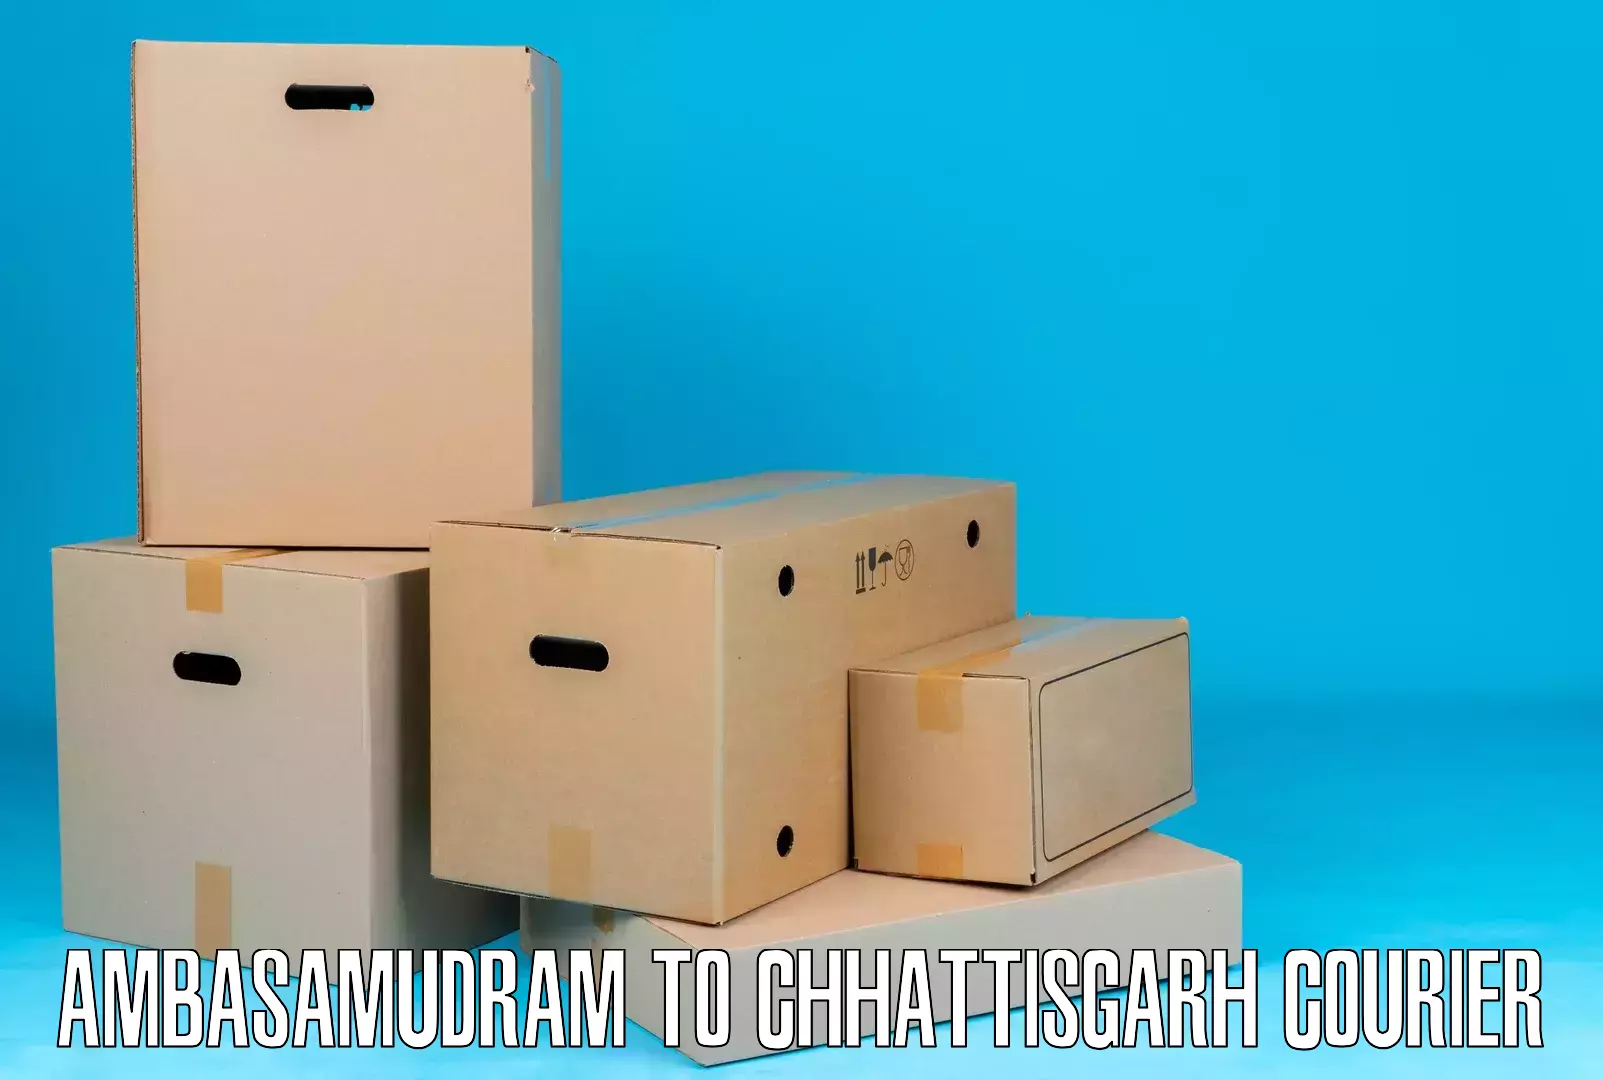 Courier dispatch services Ambasamudram to Chhattisgarh